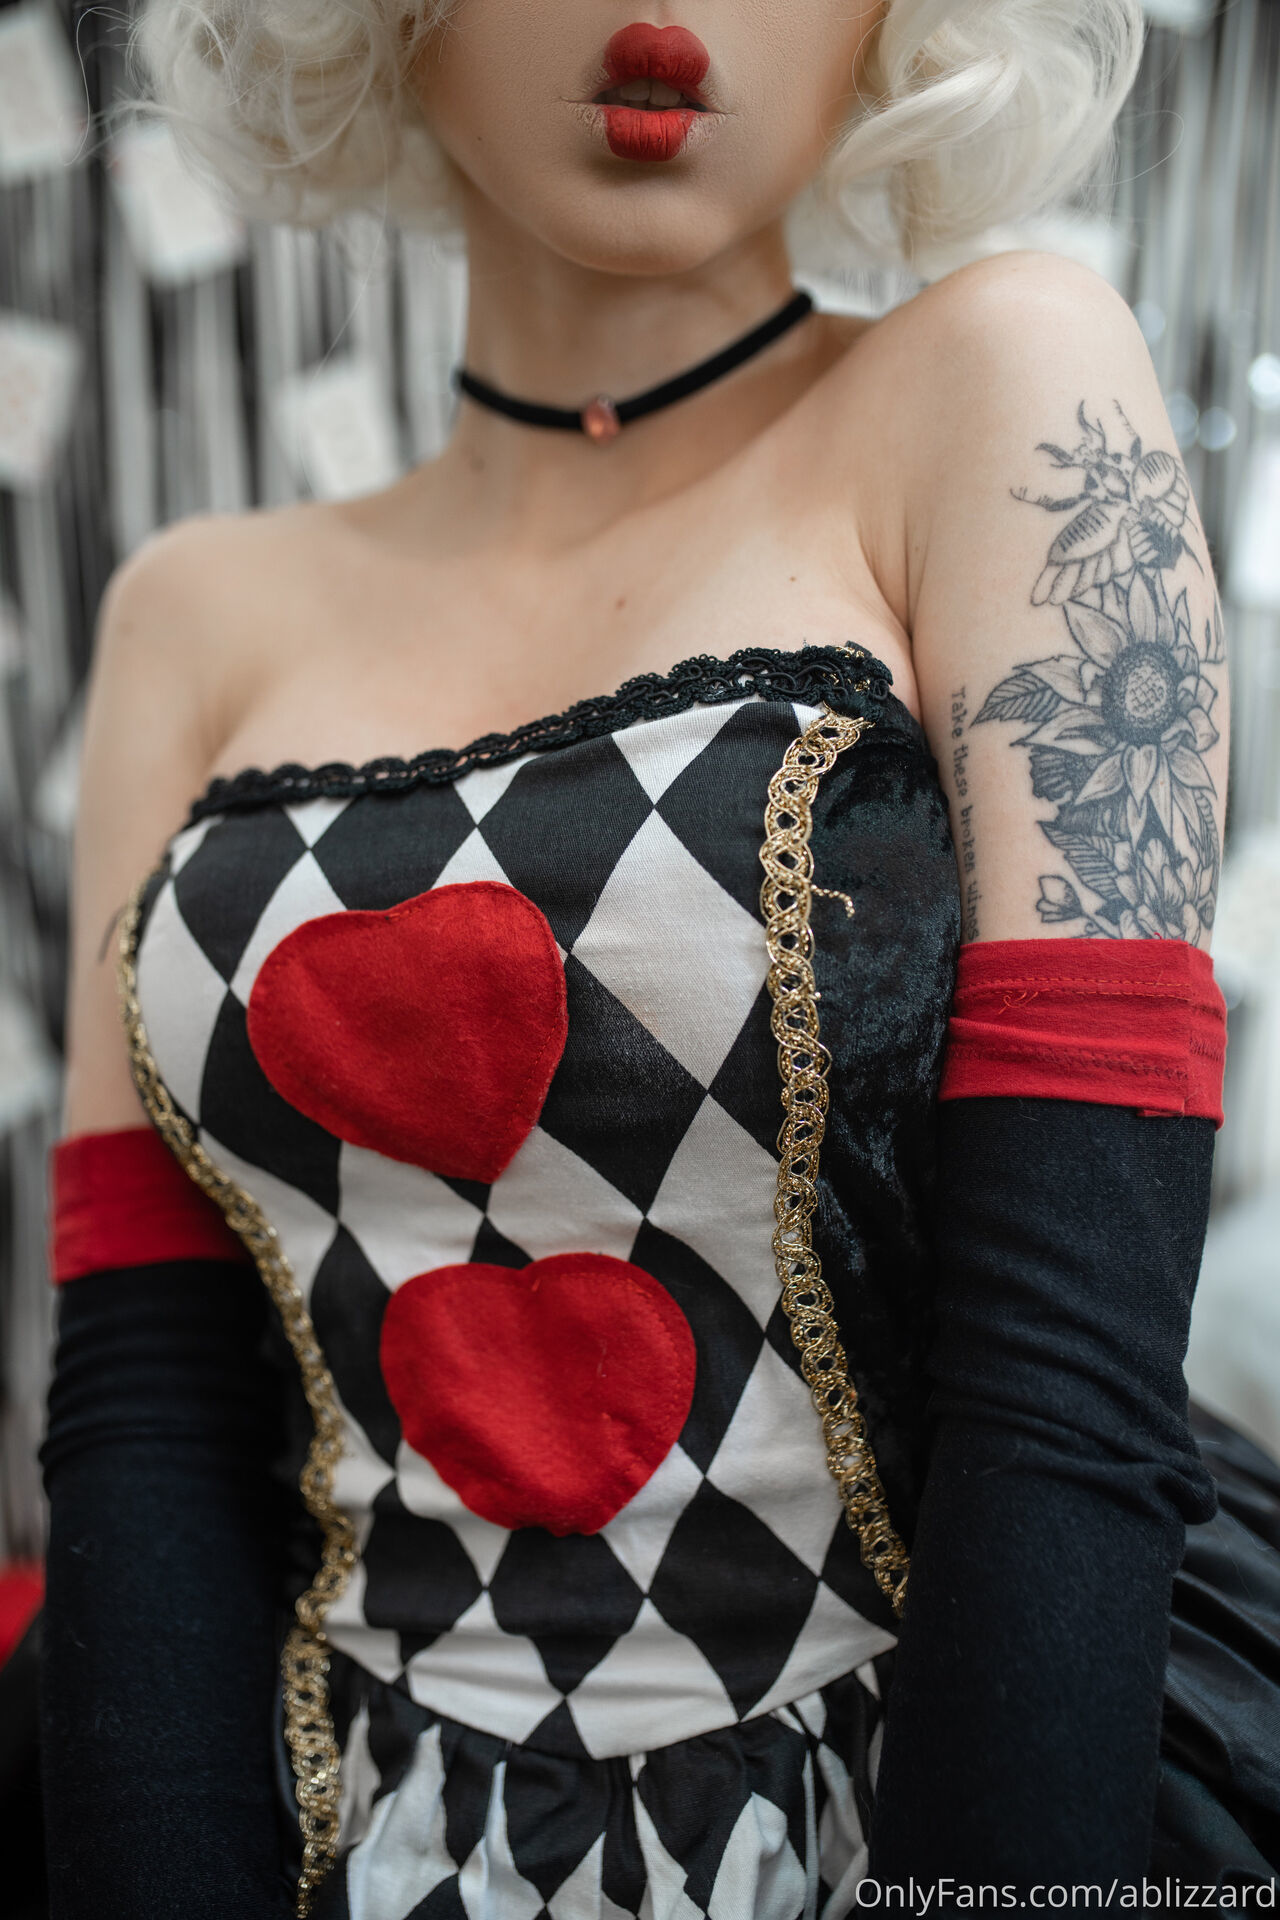 Amanda Welp - Queen of Hearts